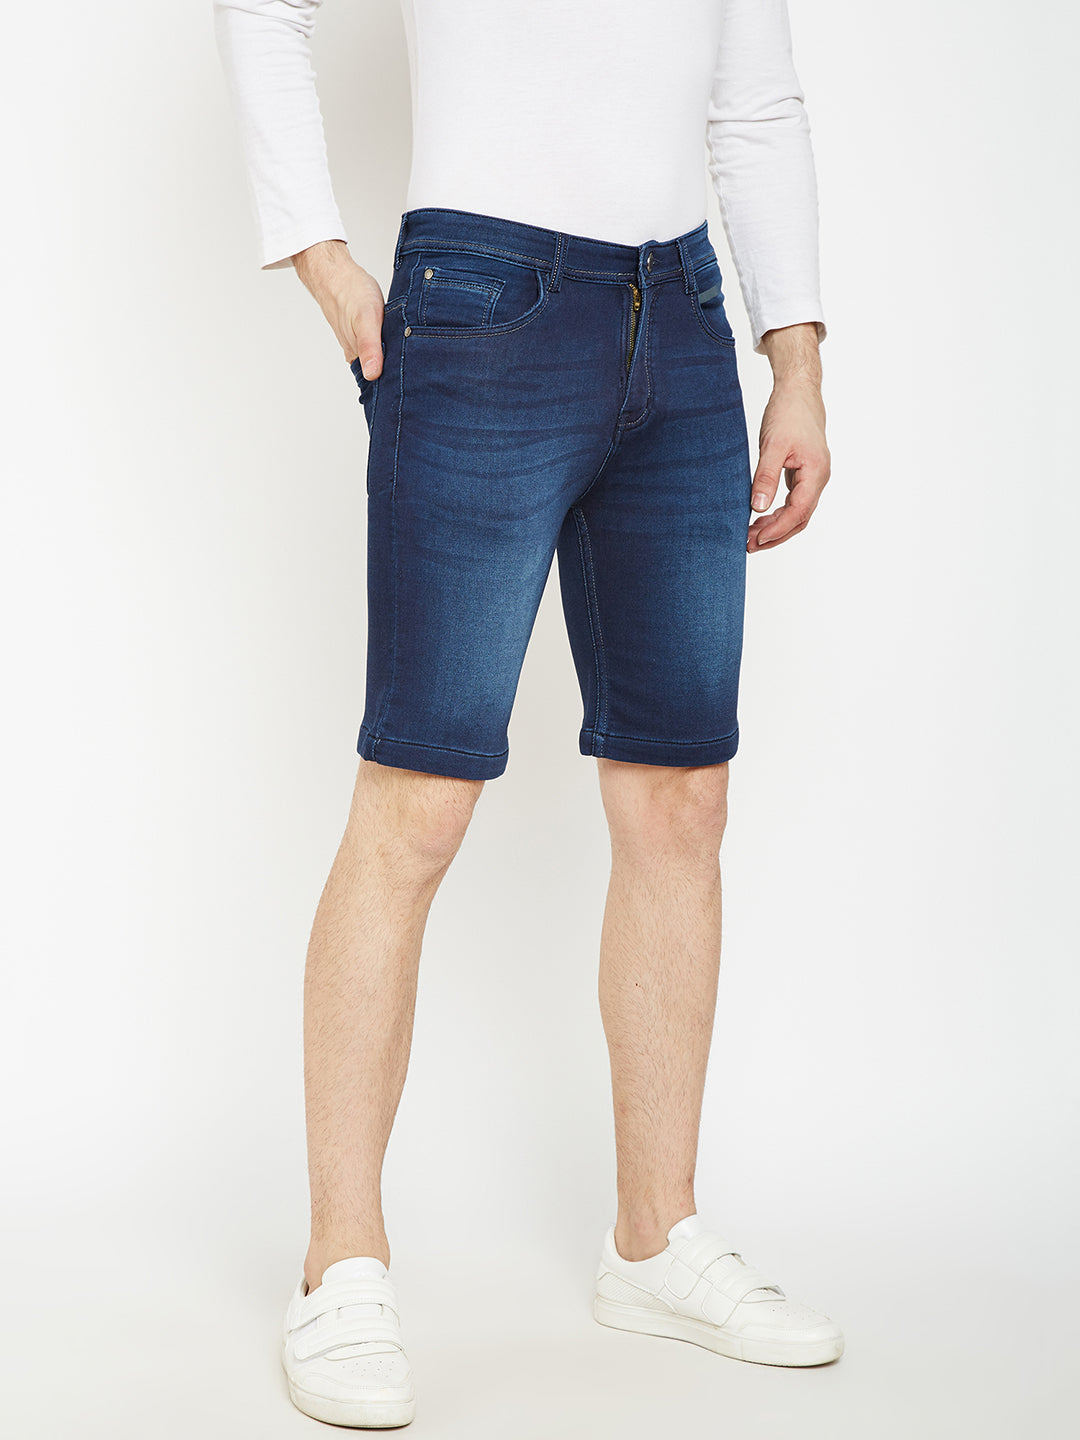 Blue Denim Shorts - Men Shorts